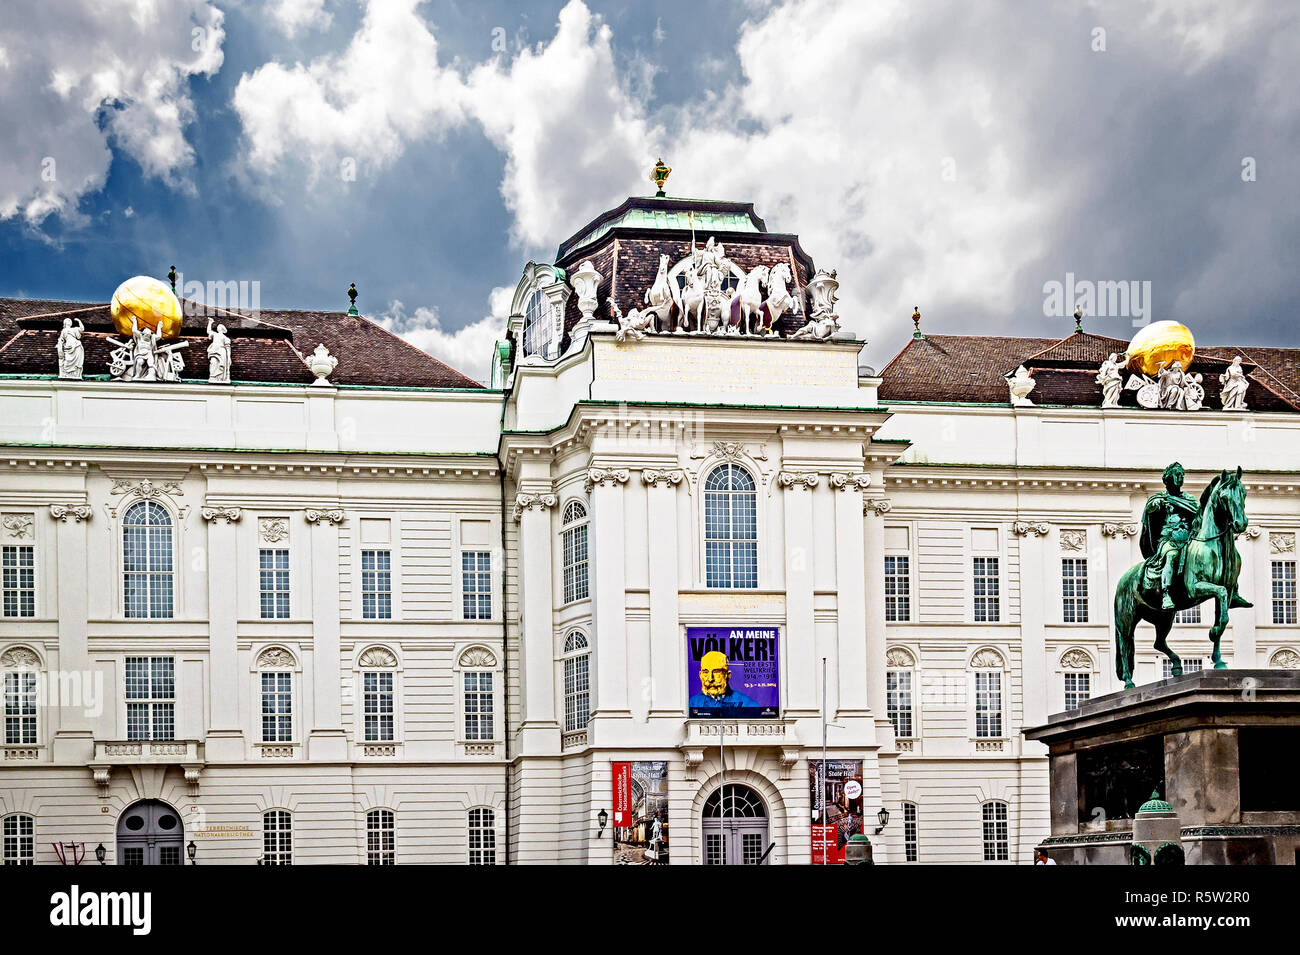 Wien, Hofburg, Österreich; Vienna (Austria), Hofburg, imperial palace Stock Photo